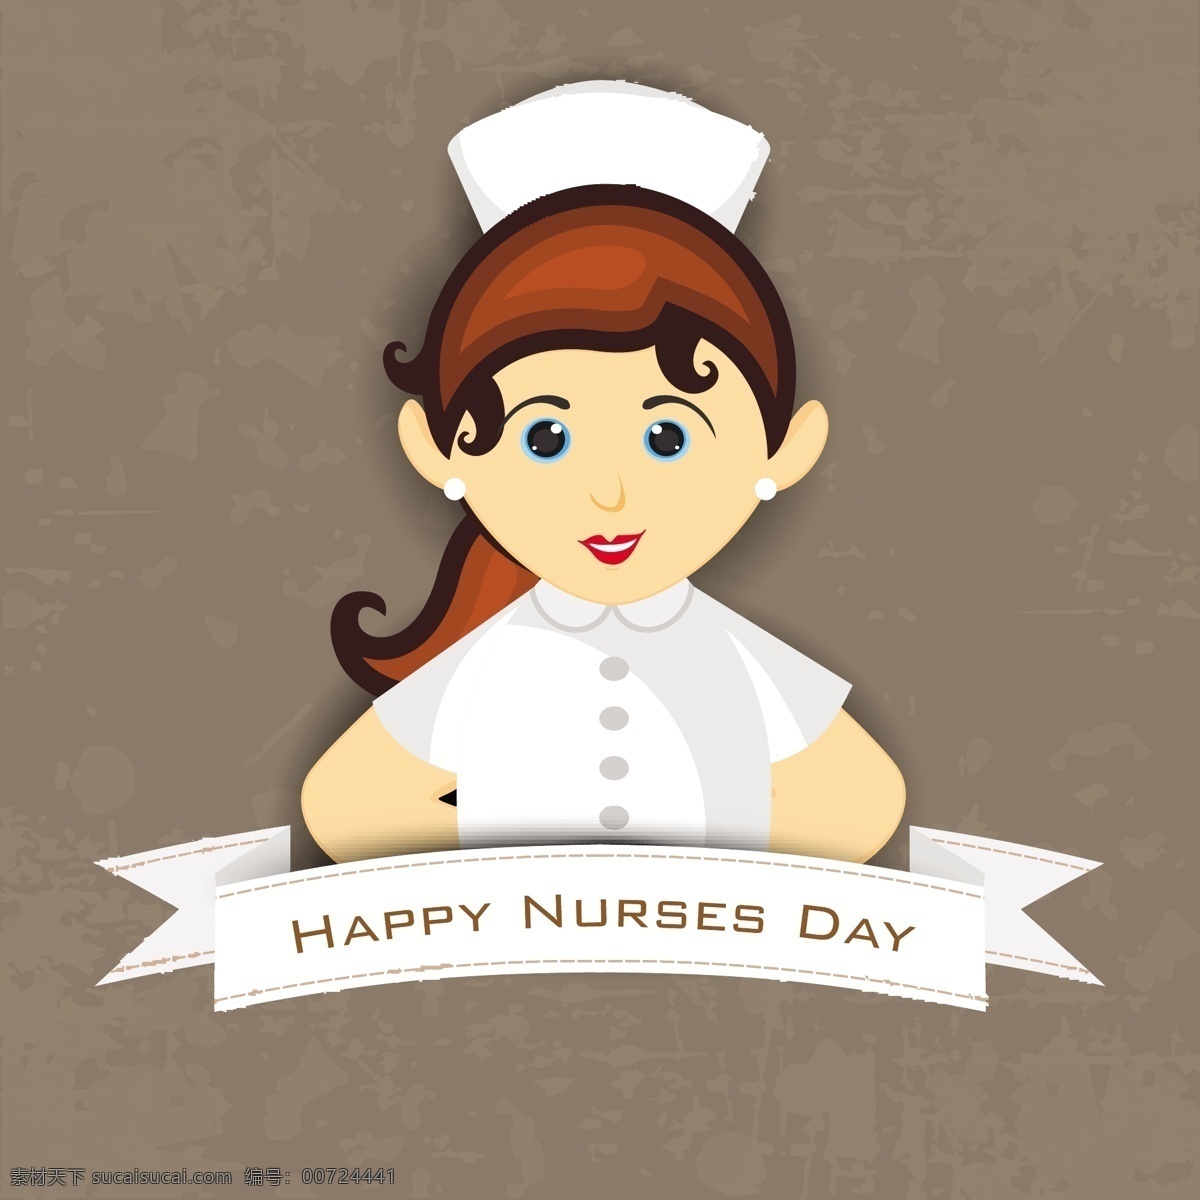 国际护士节 概念 一个 护士 插图 灰色